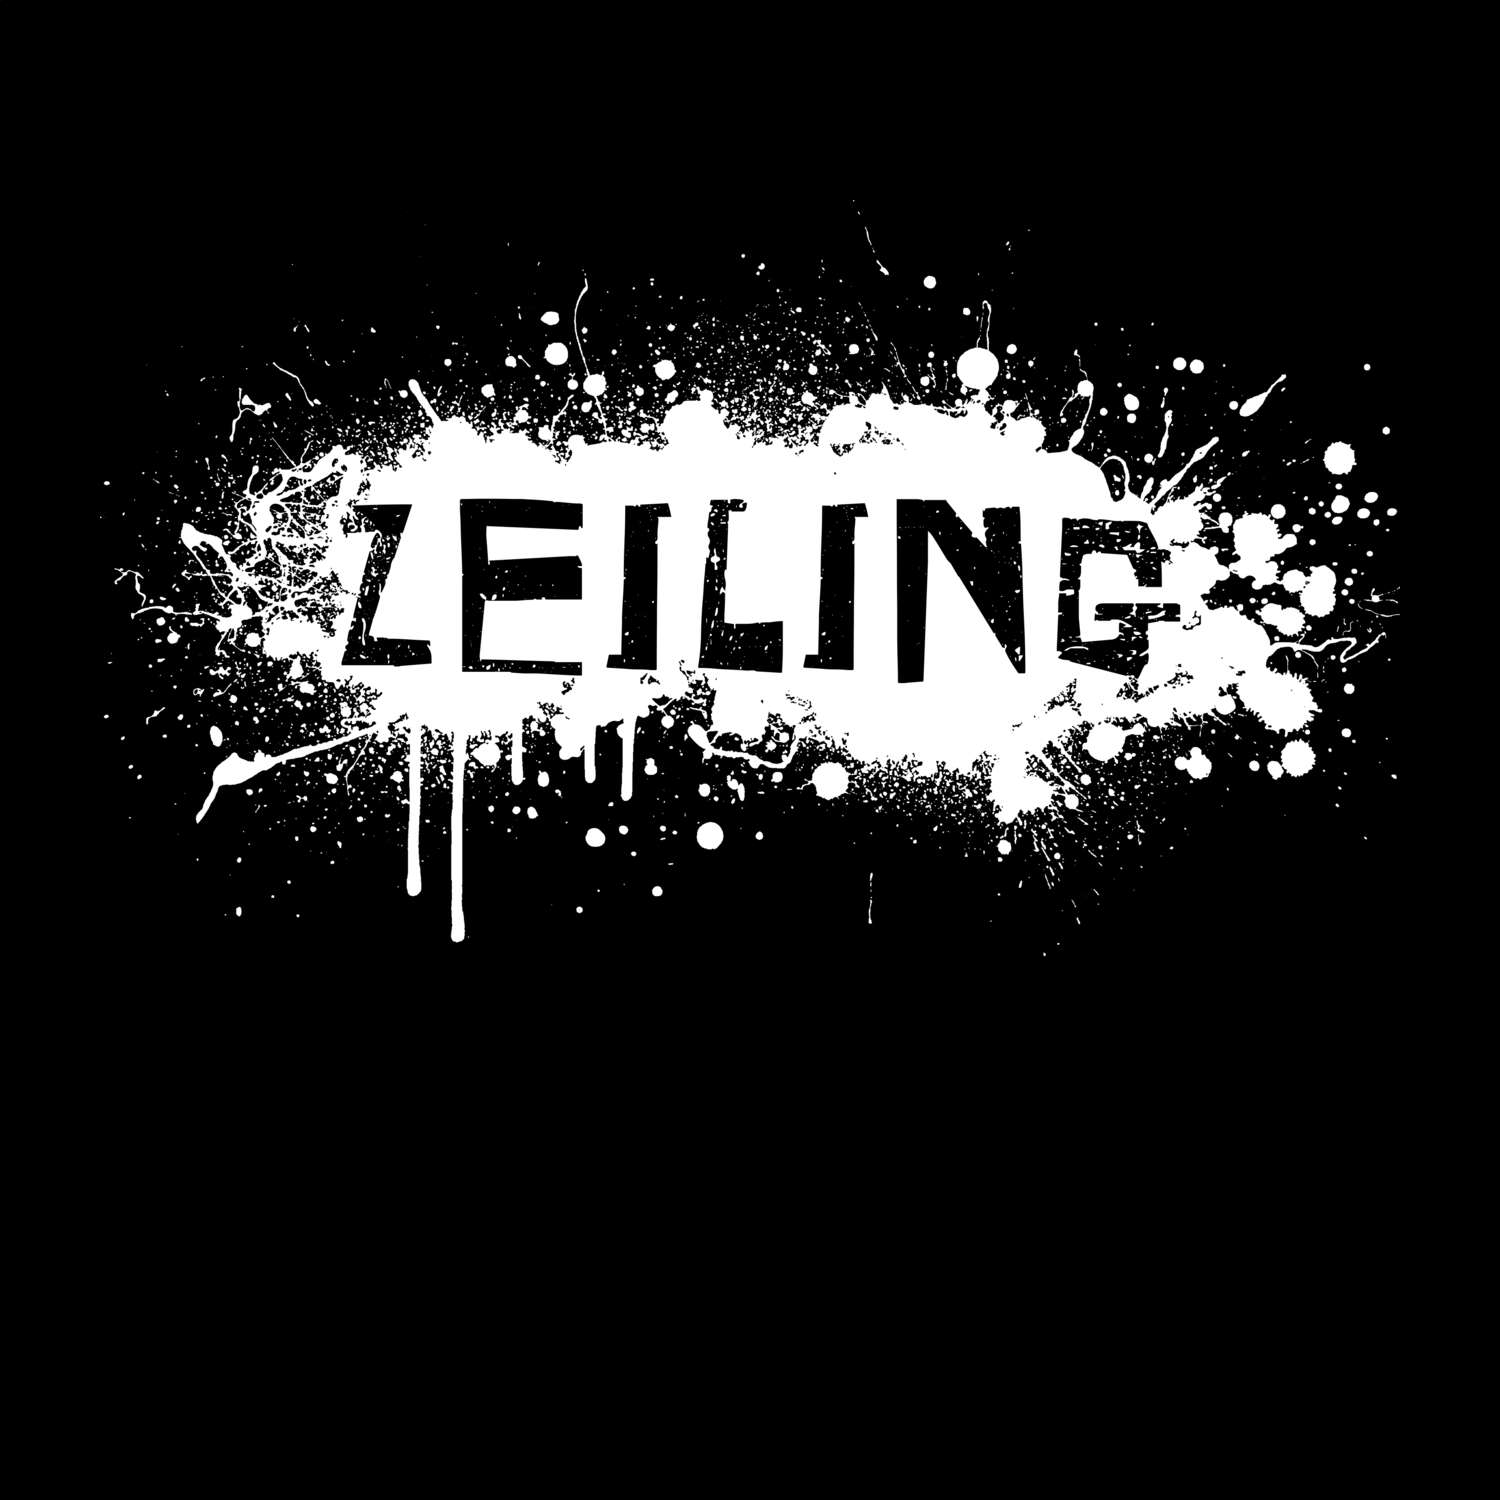 Zeiling T-Shirt »Paint Splash Punk«